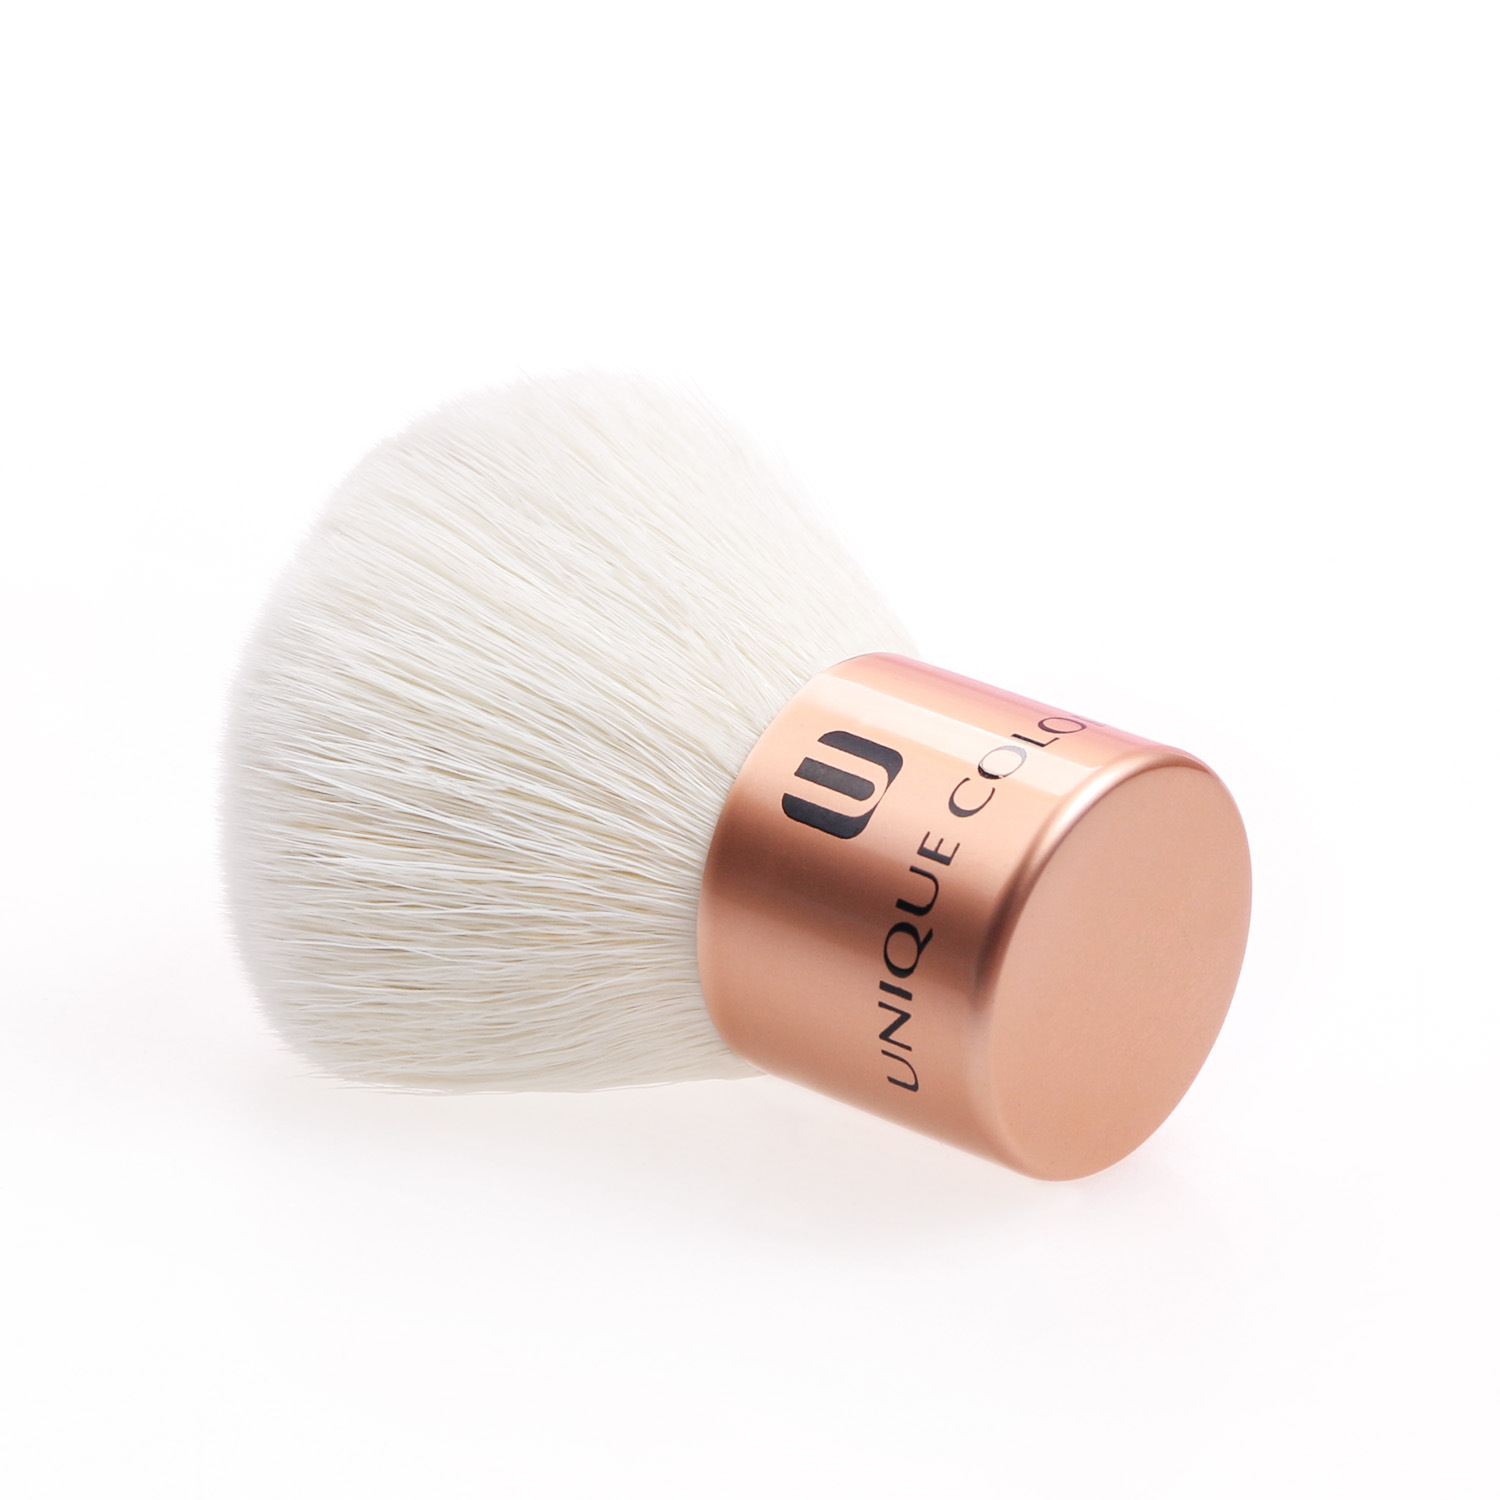 Premium Cosmetic Brushes